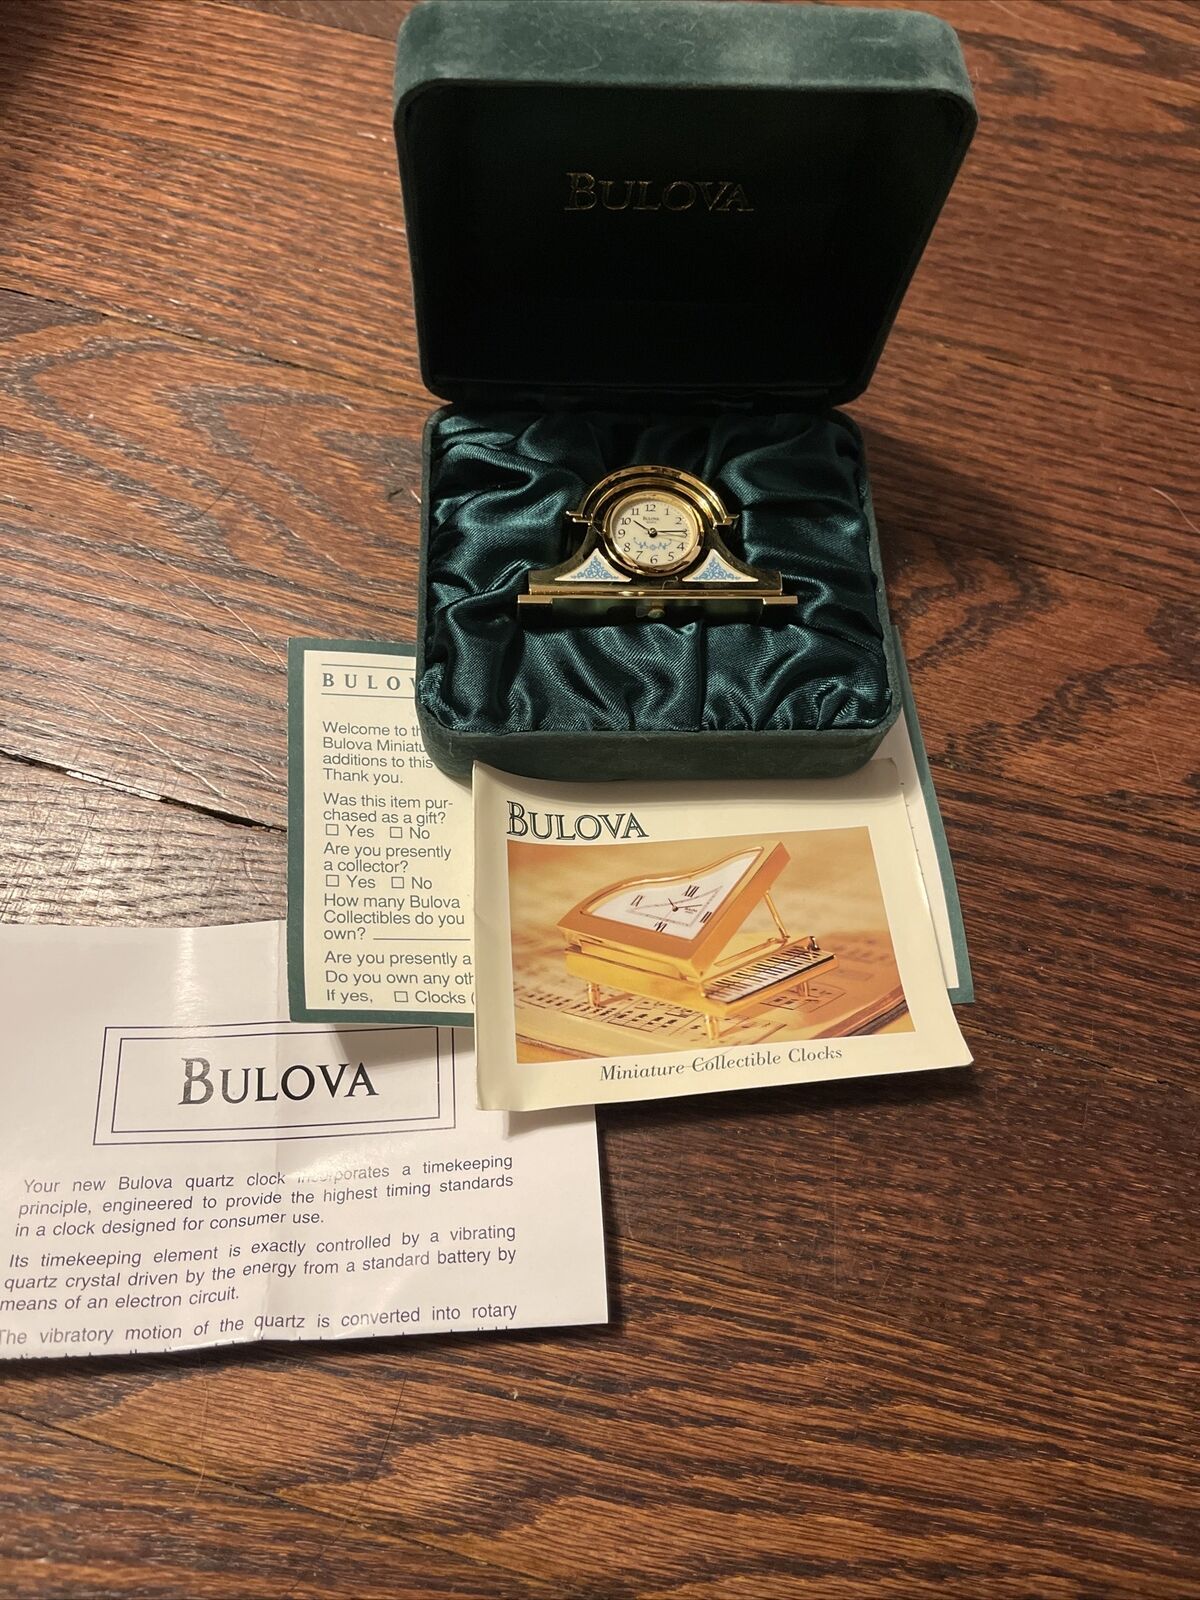 Bulova Grafton Mantle #B0548 Mini Boutique Collectible Clock. Rare New in Box  